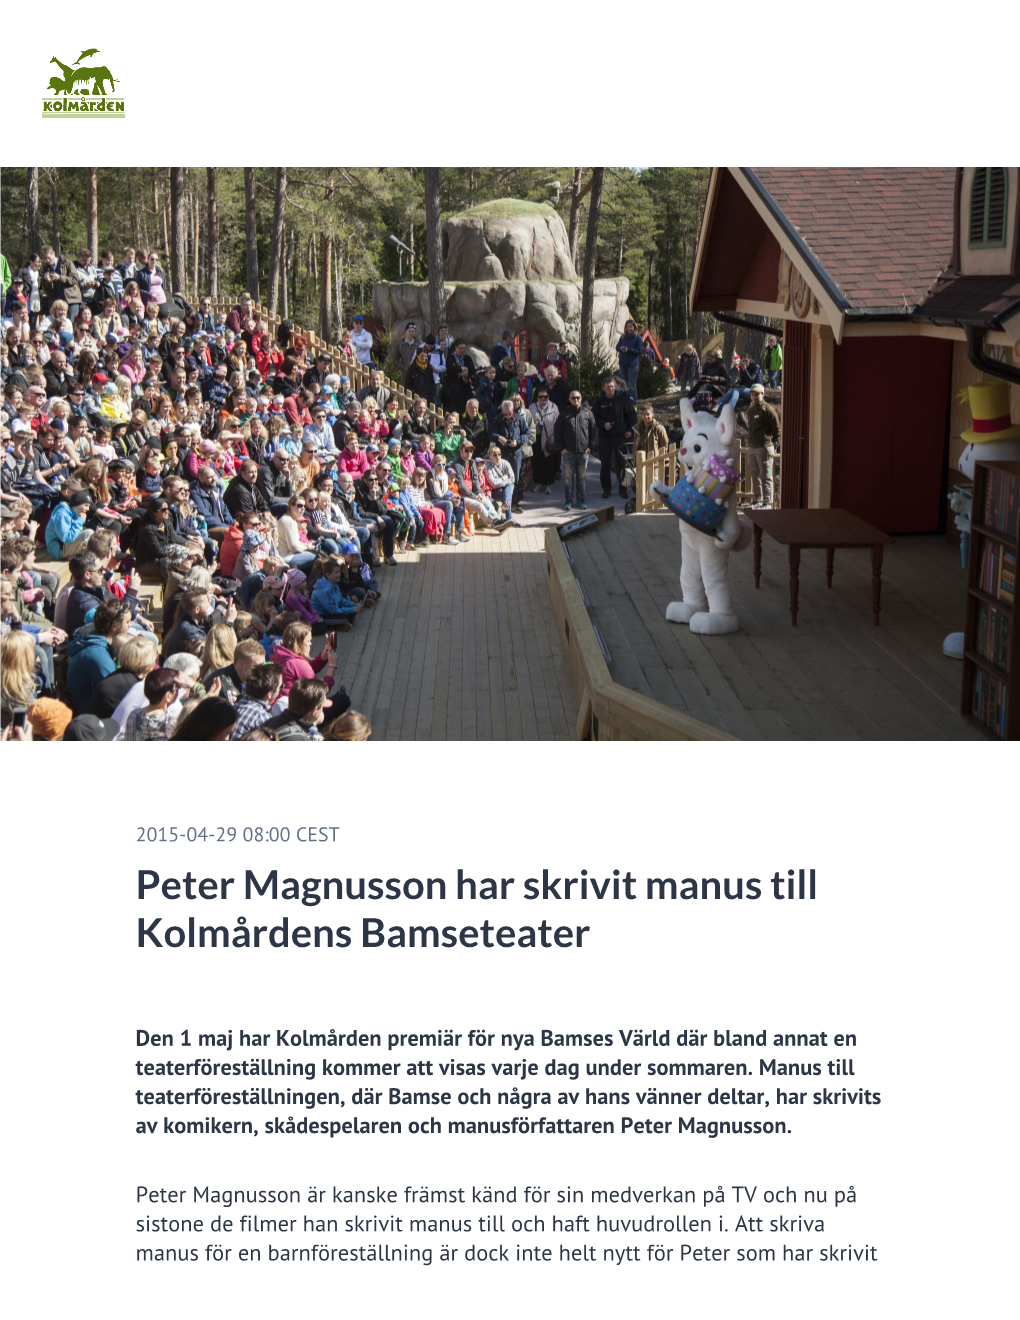 Peter Magnusson Har Skrivit Manus Till Kolmårdens Bamseteater